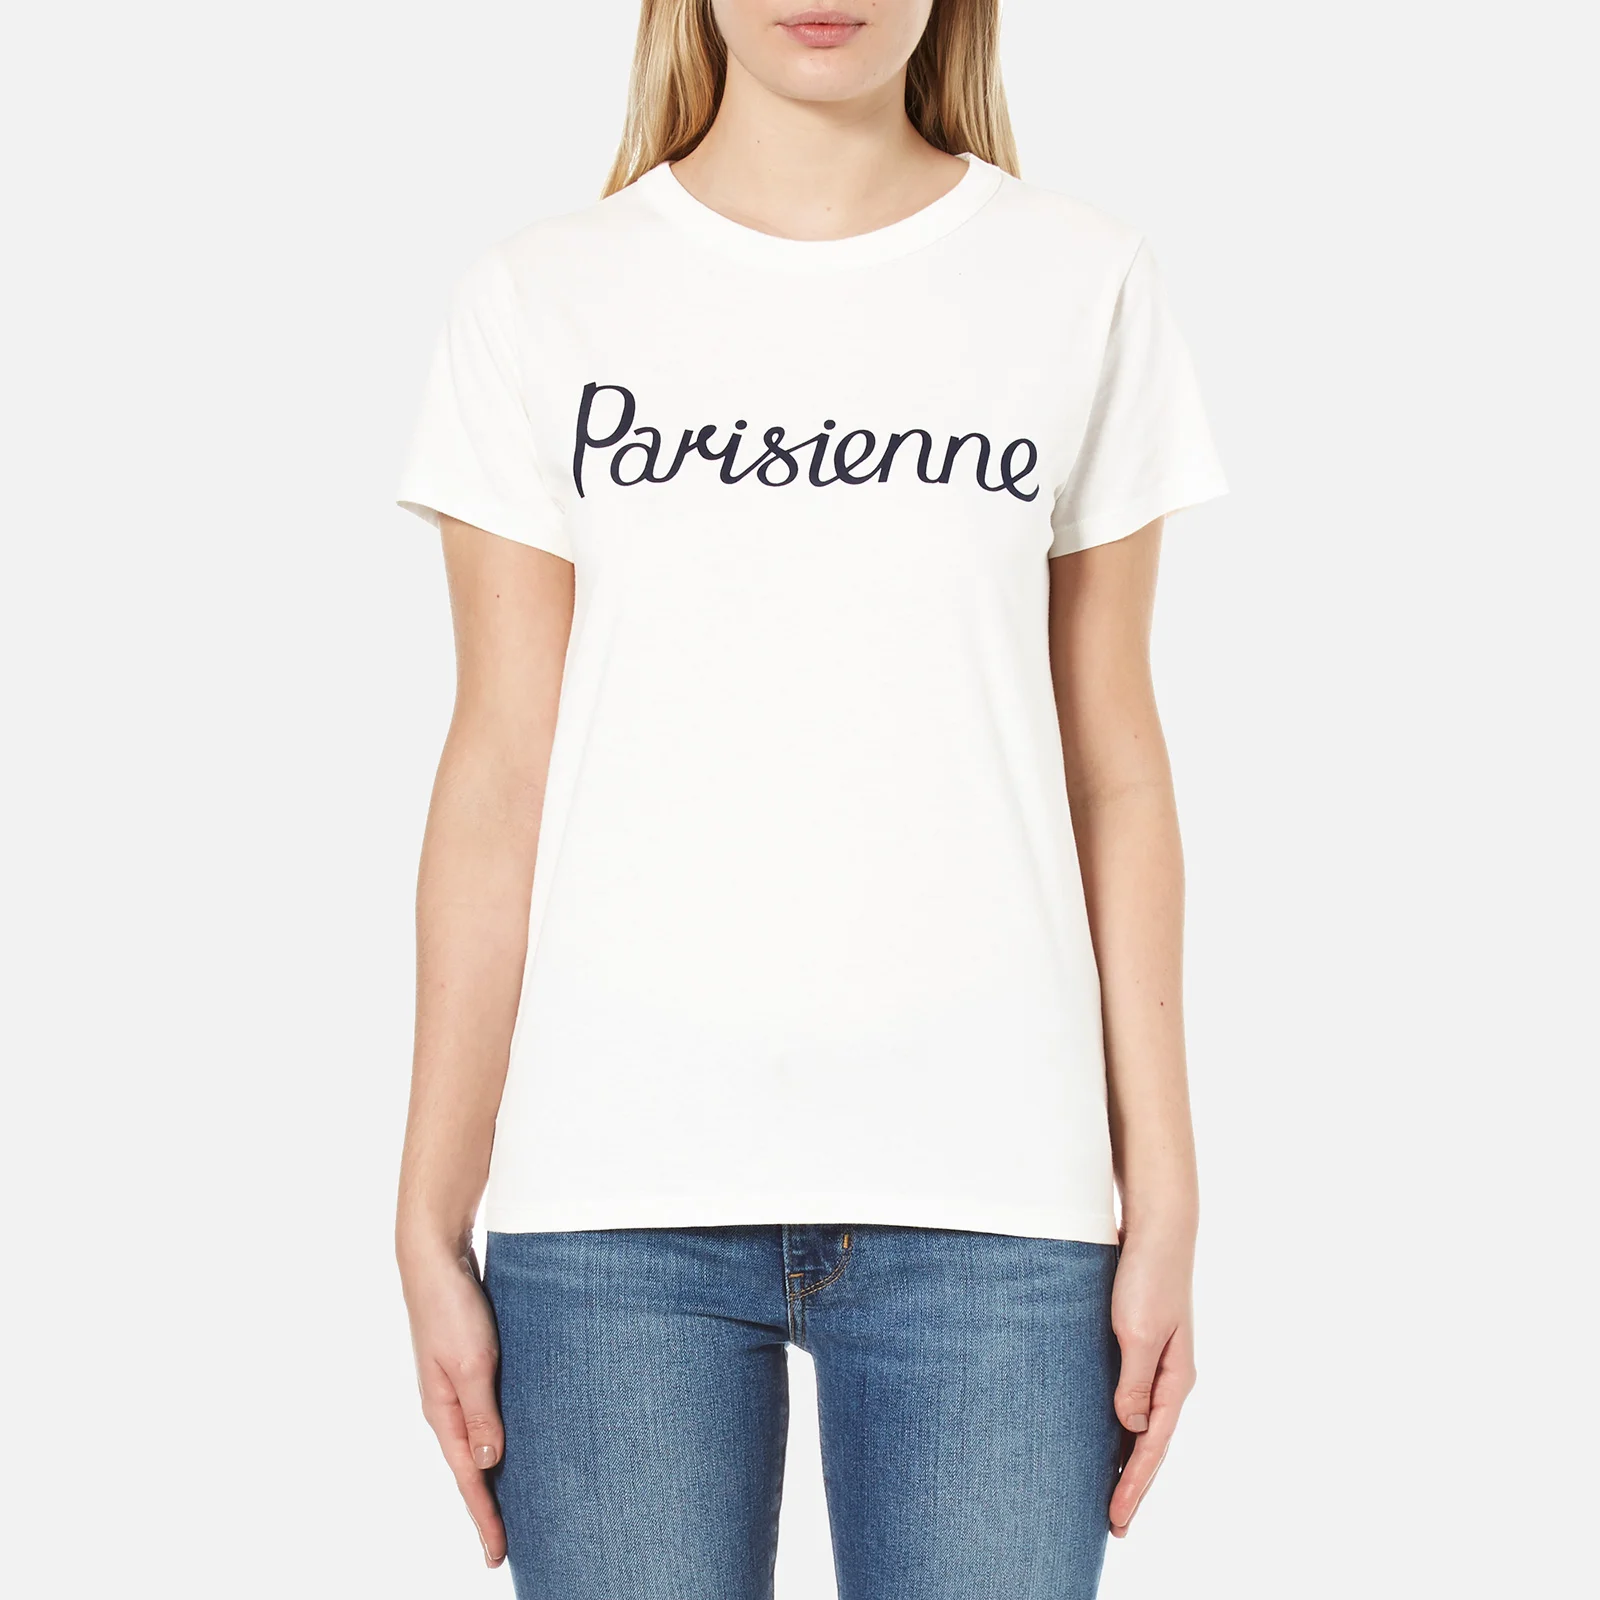 Maison Kitsuné Women's Parisienne T-Shirt - Latte Image 1